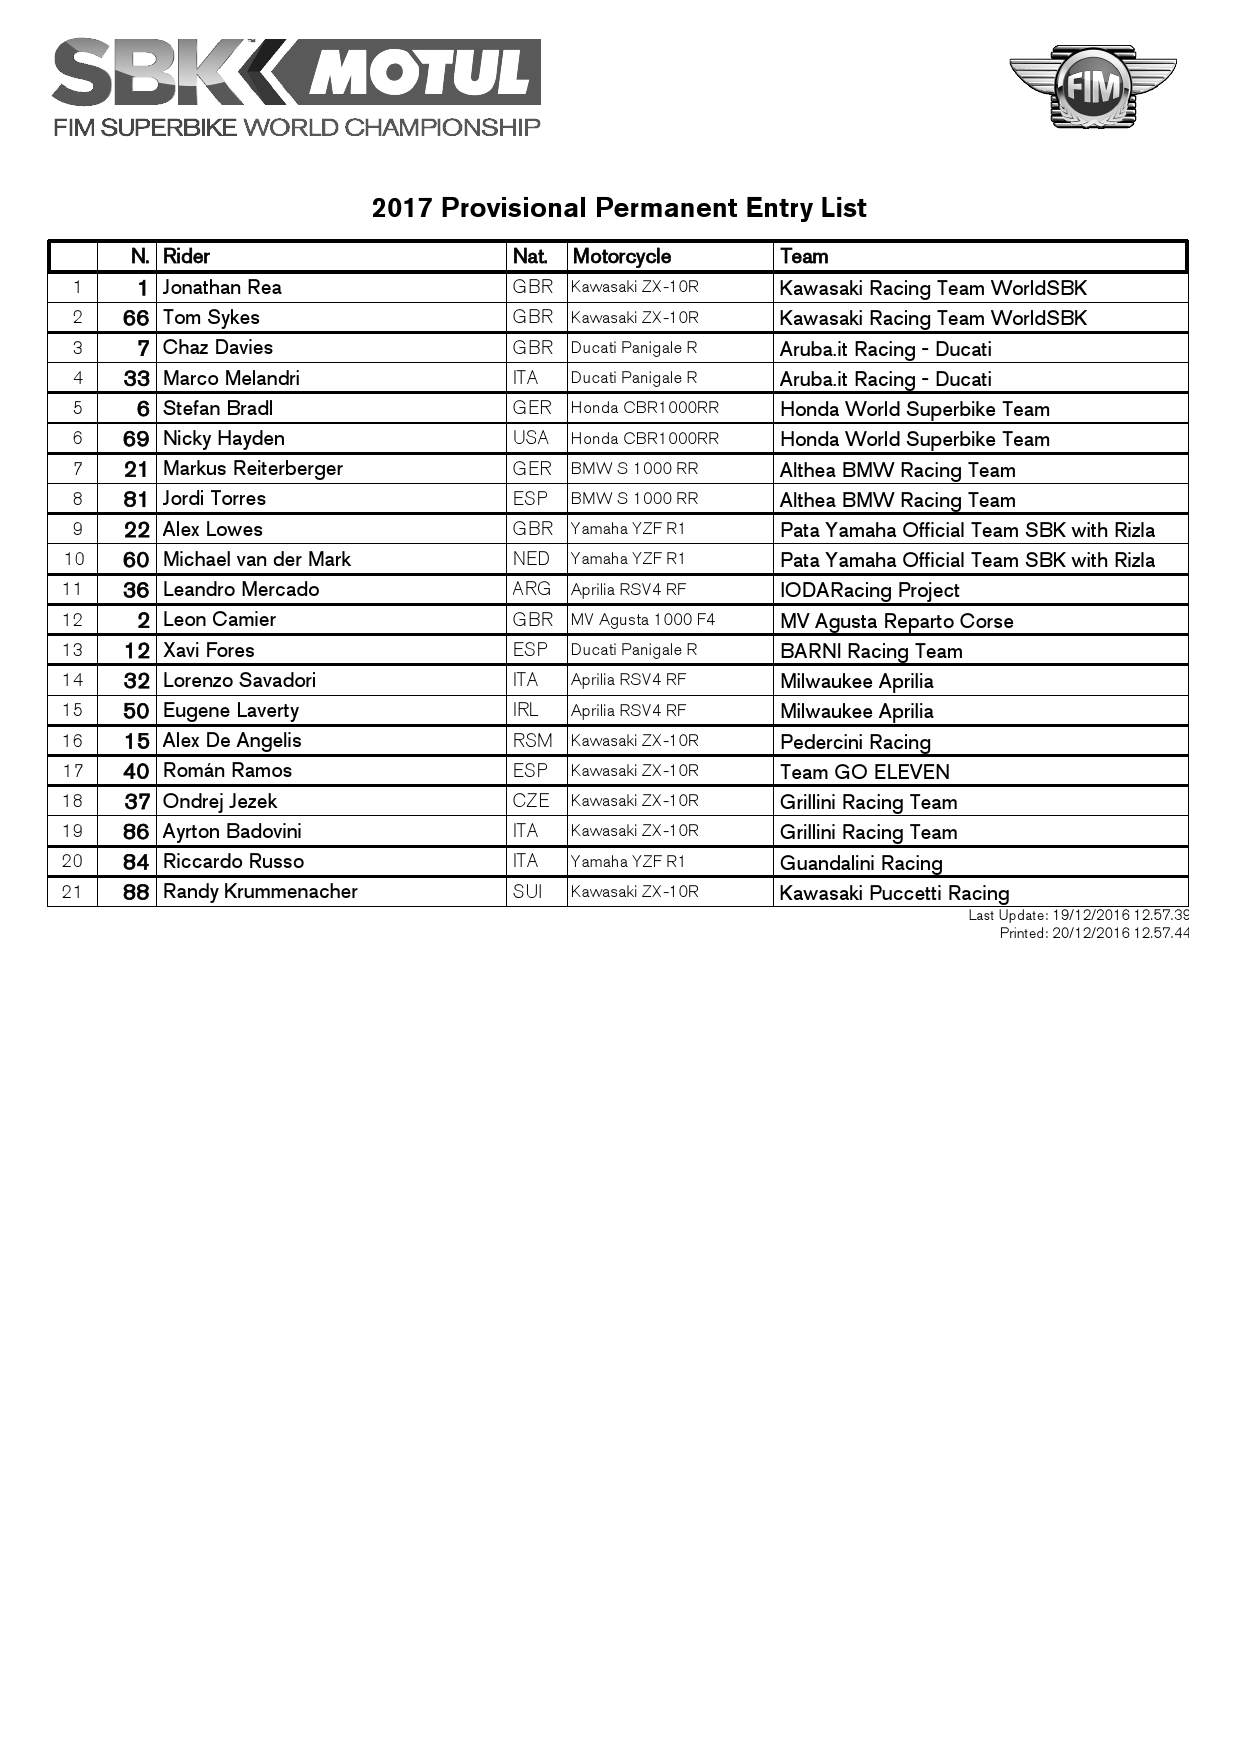 Список участников World Superbike 2017 от 22.01.2016